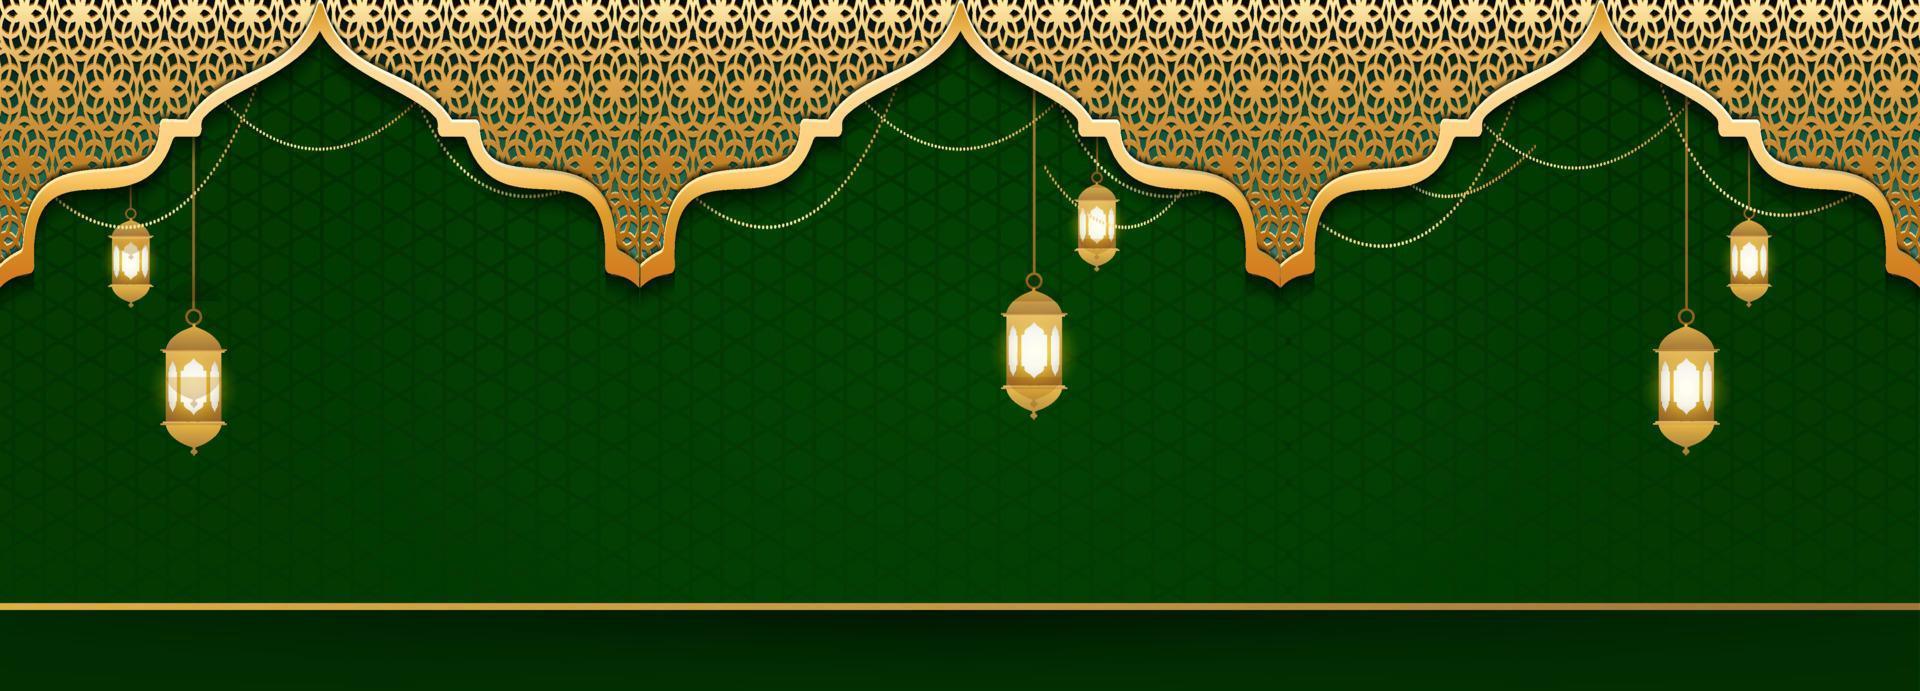 fundo islâmico de luxo com ornamentos dourados vetor